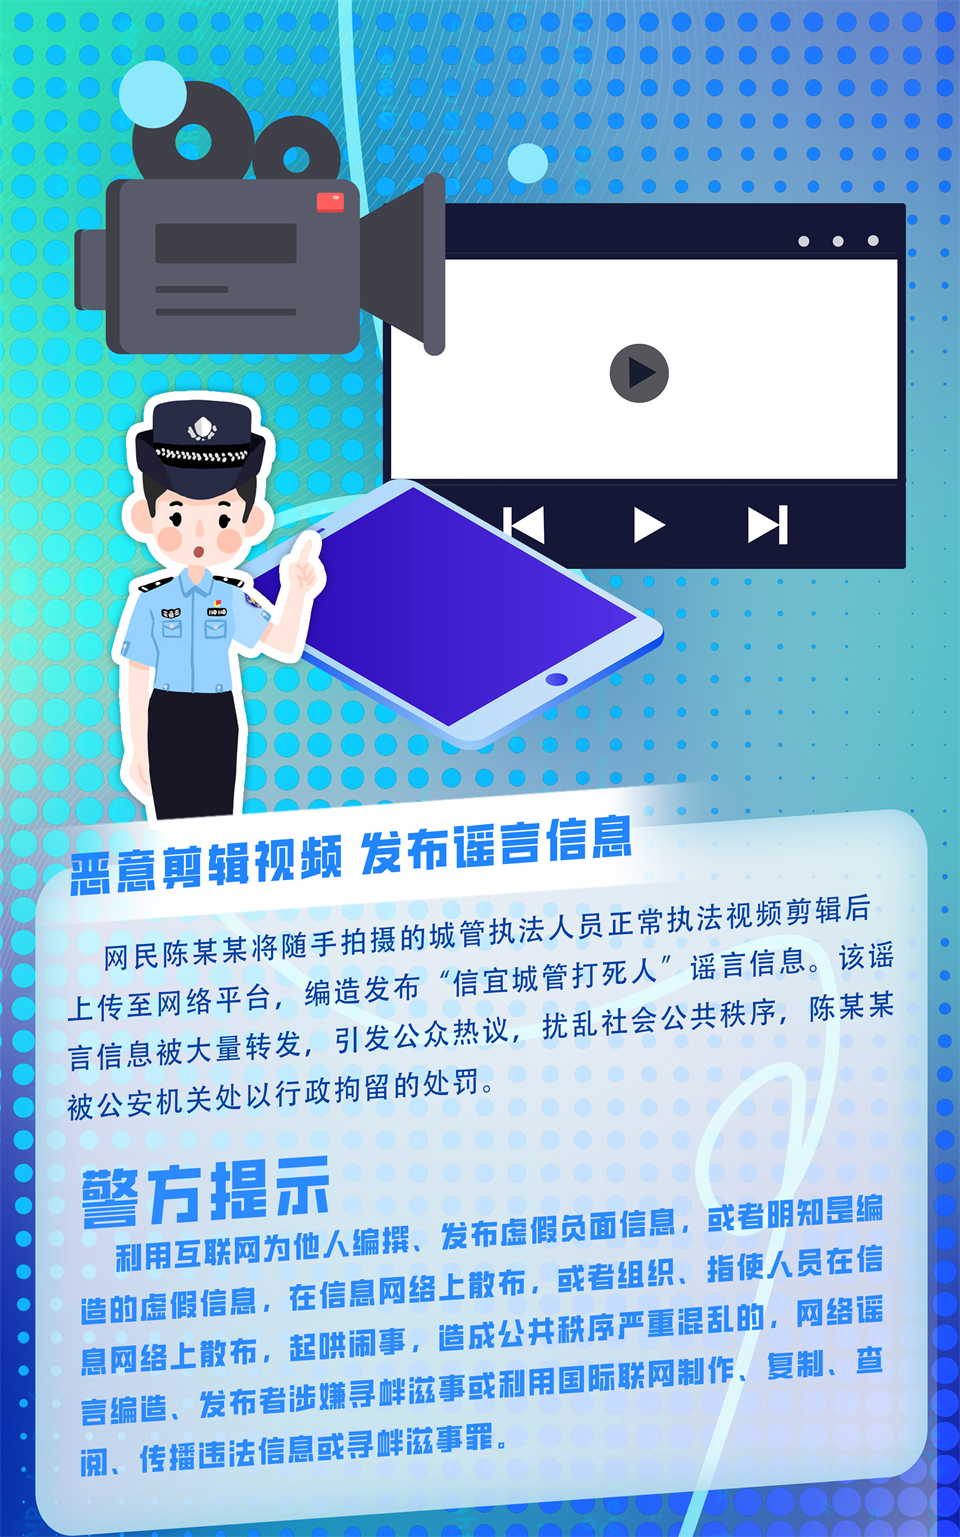 重庆渝北警方发布典型网络造谣案图解_fororder_图片3